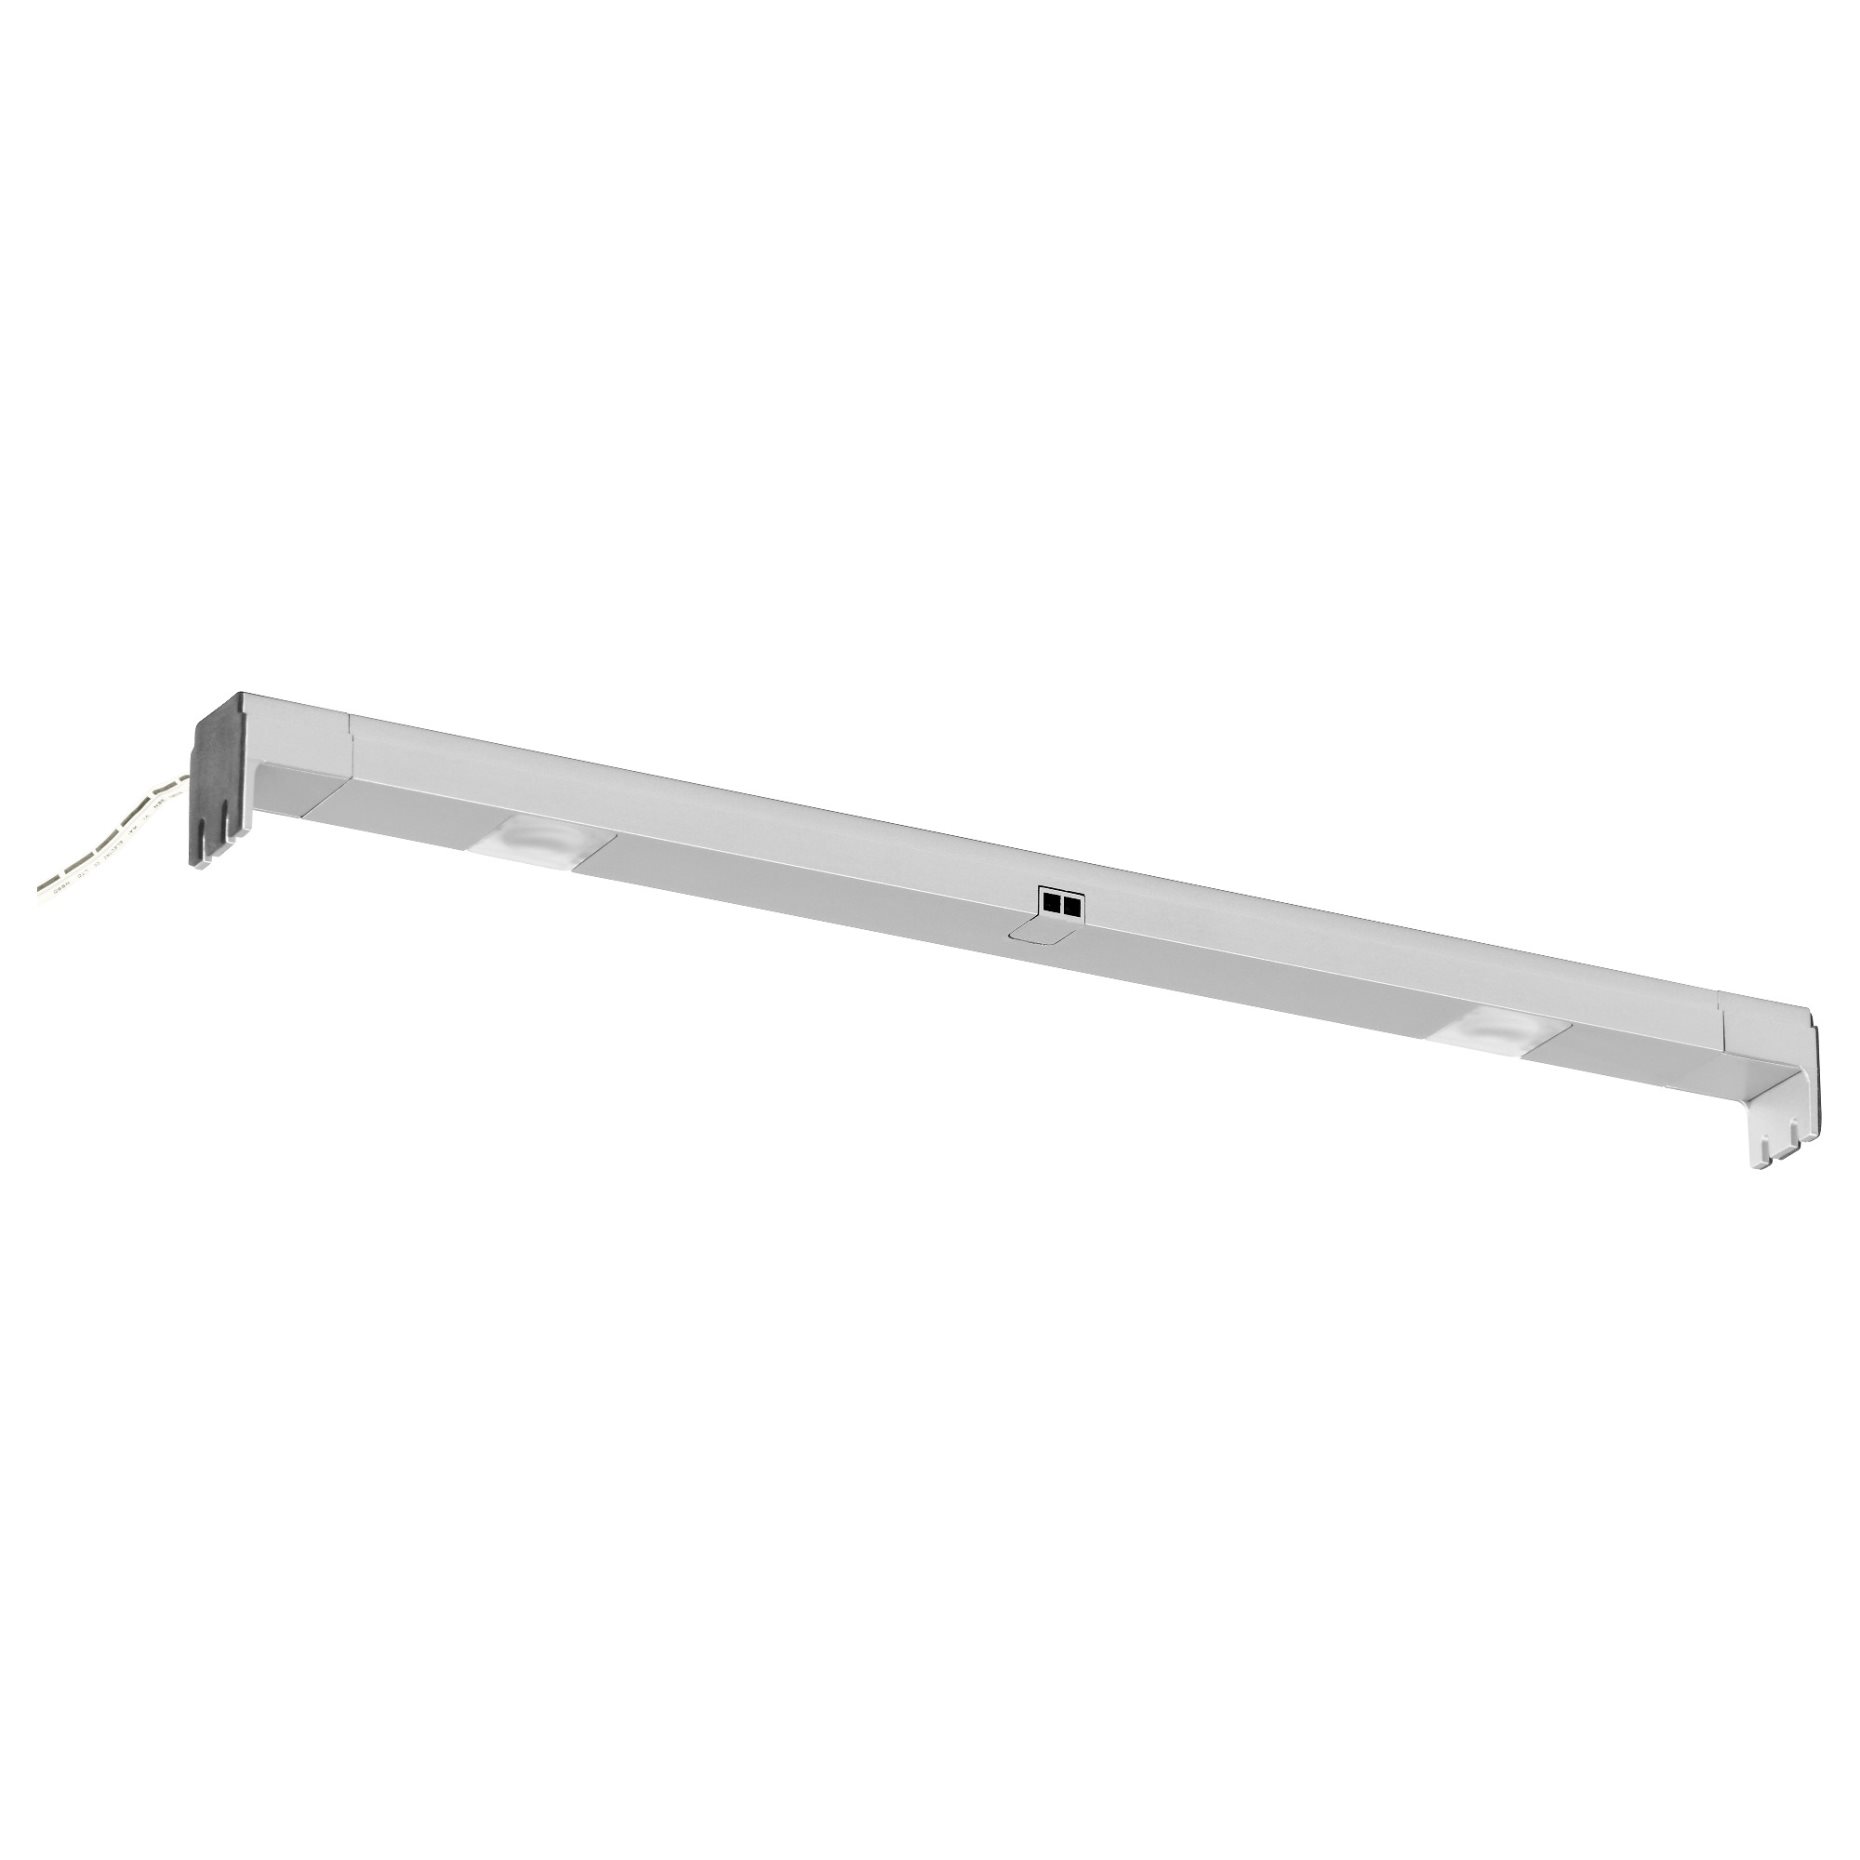 OMLOPP, LED lighting strip for drawers, 402.452.27